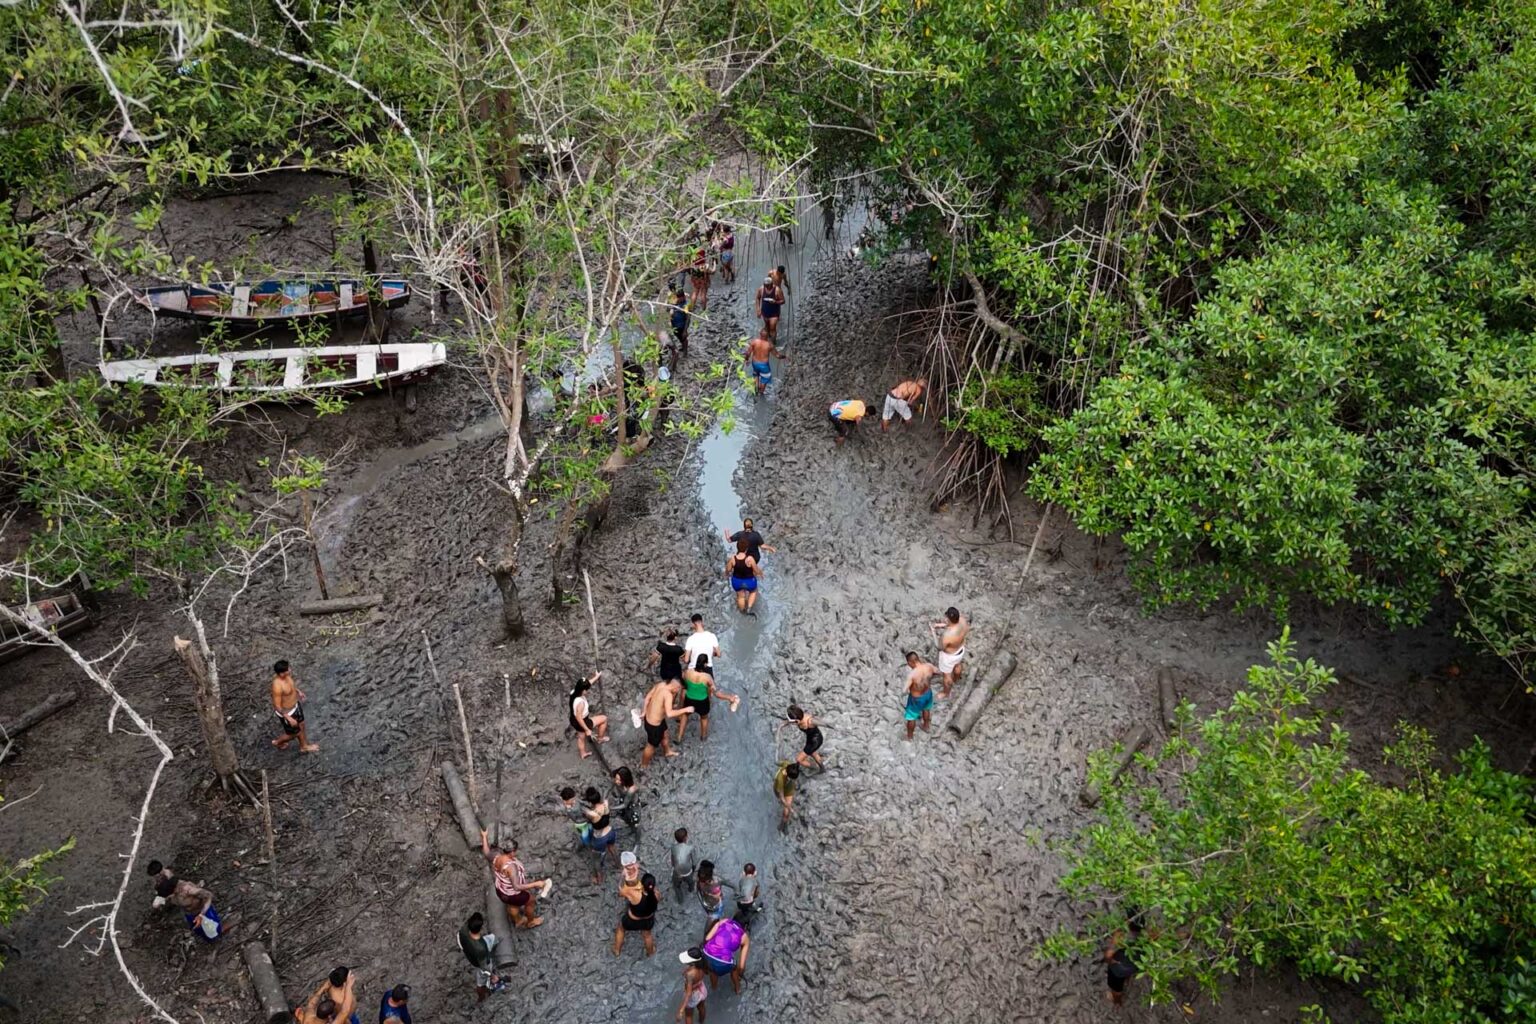 Na Amazônia, bloco de Carnaval reúne milhares de foliões no manguezal